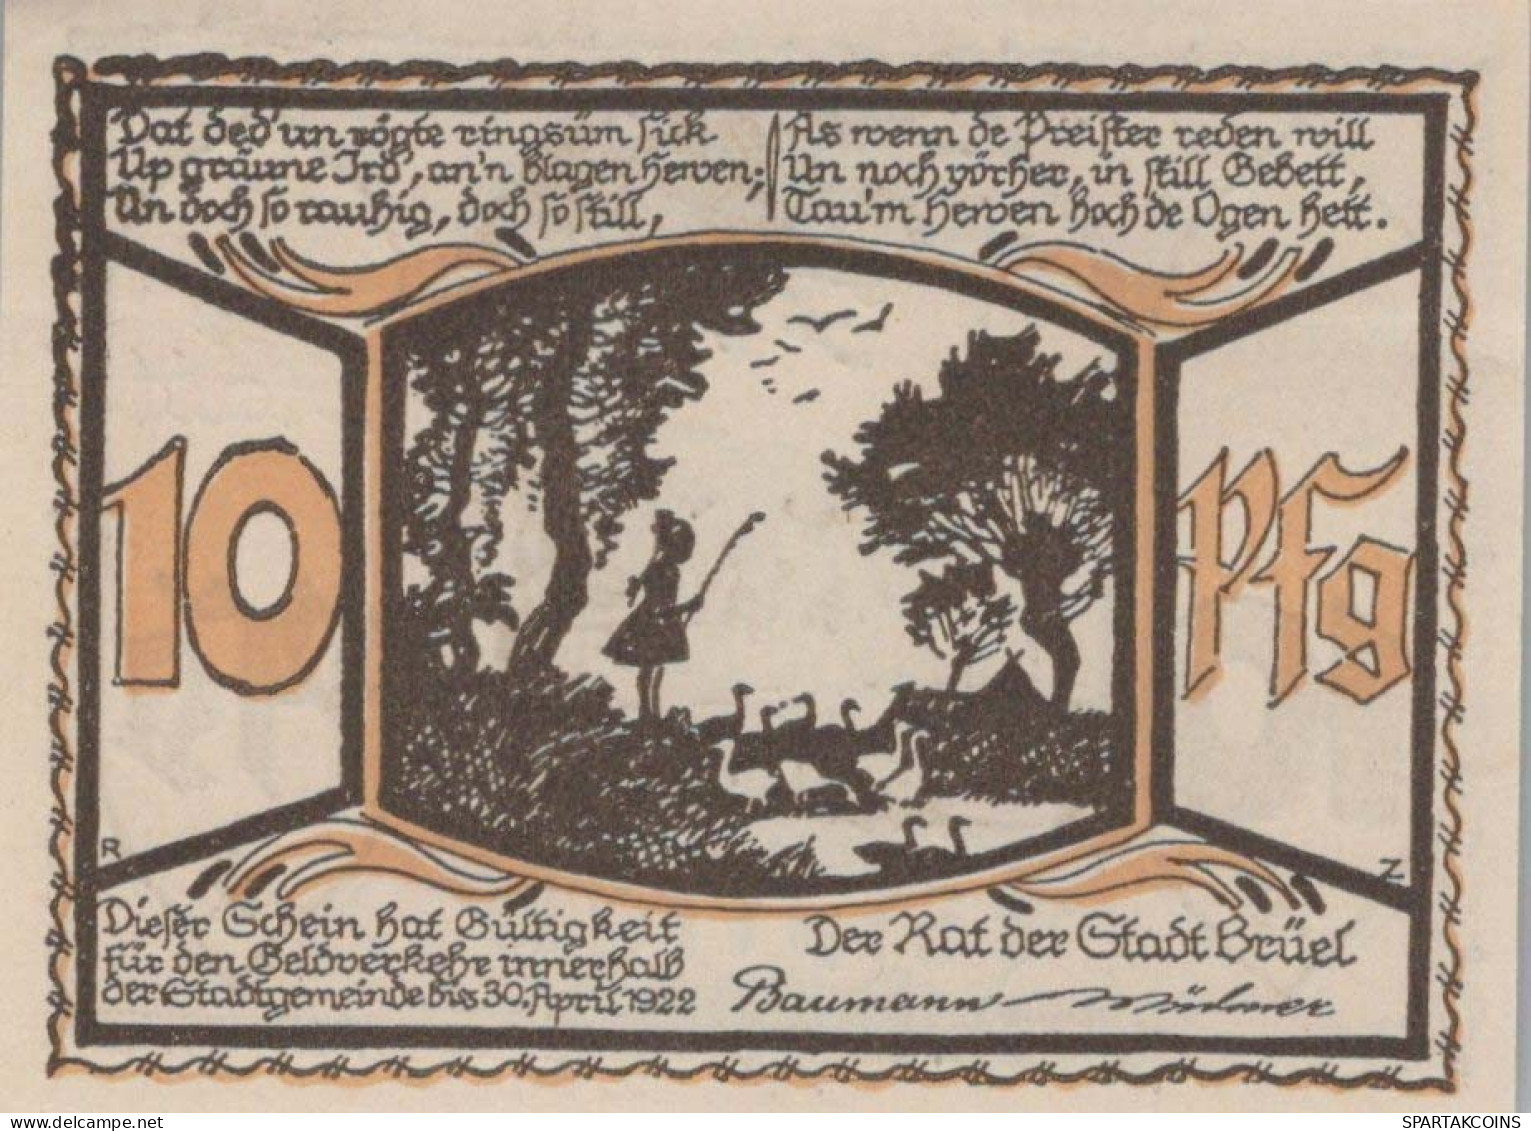 10 PFENNIG 1922 Stadt BRÜEL Mecklenburg-Schwerin UNC DEUTSCHLAND Notgeld #PA299 - [11] Local Banknote Issues